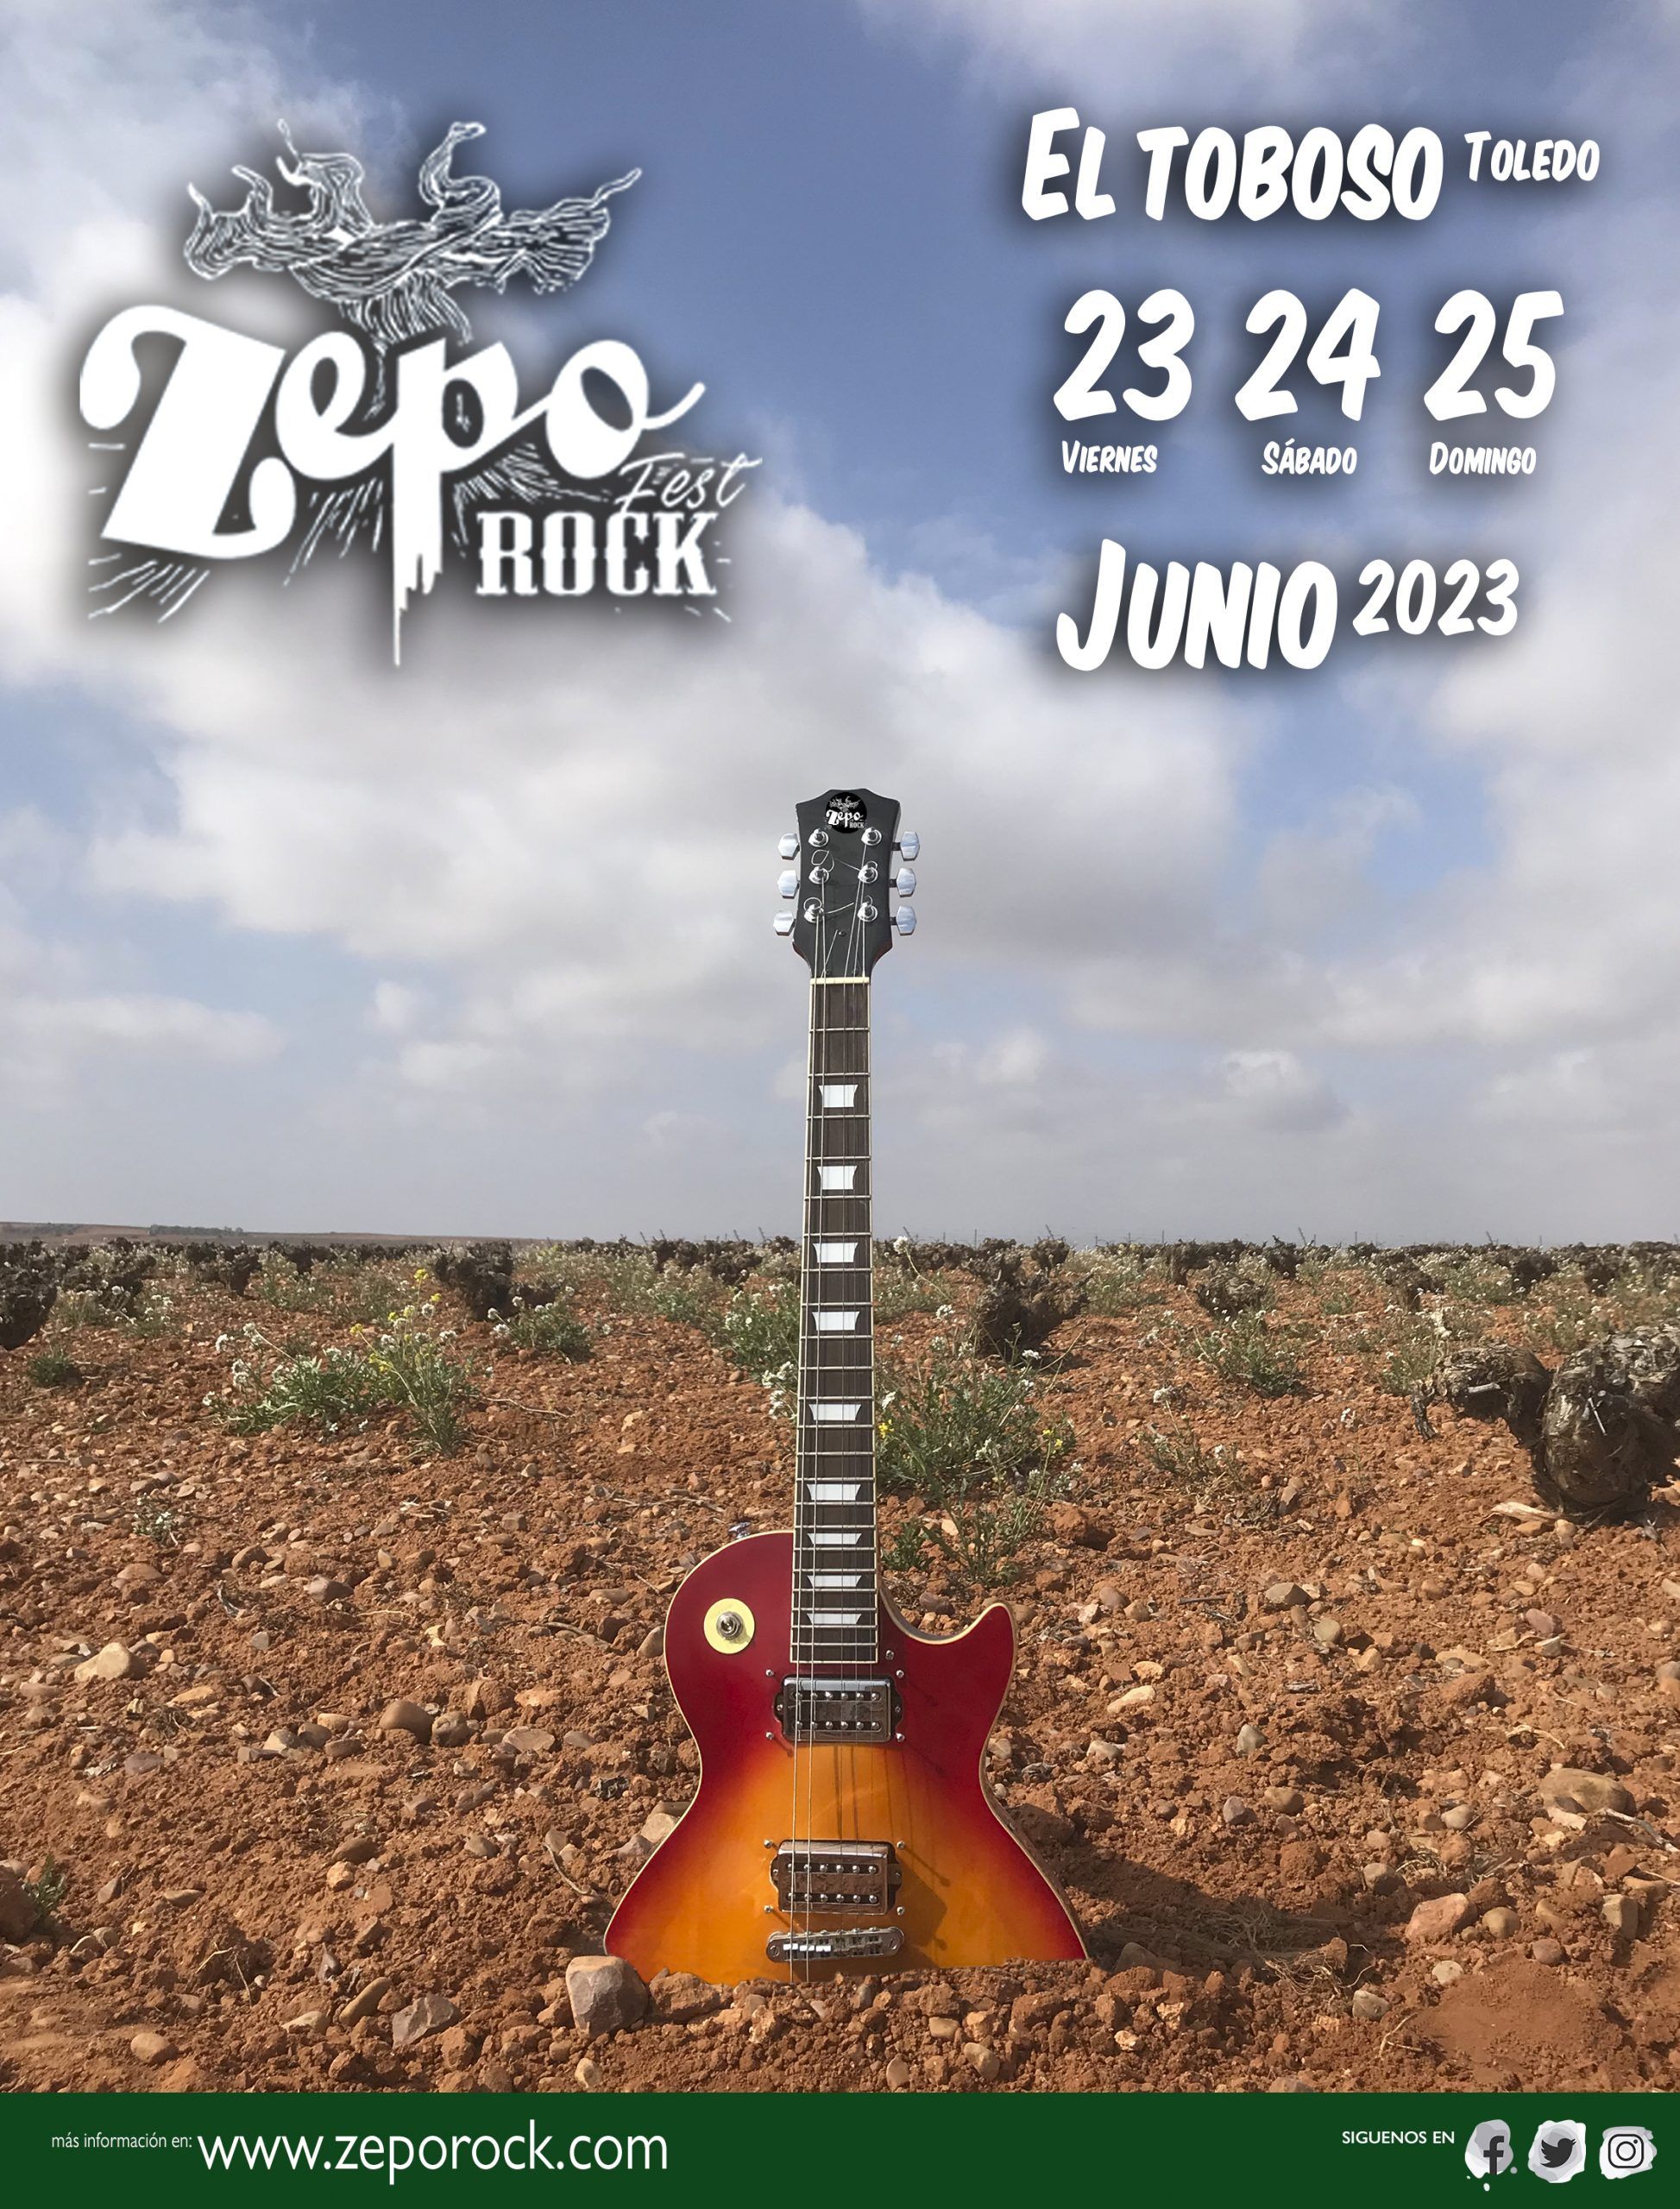 EL ZEPOROCK llenará El Toboso de música el 23, 24 y 25 Junio